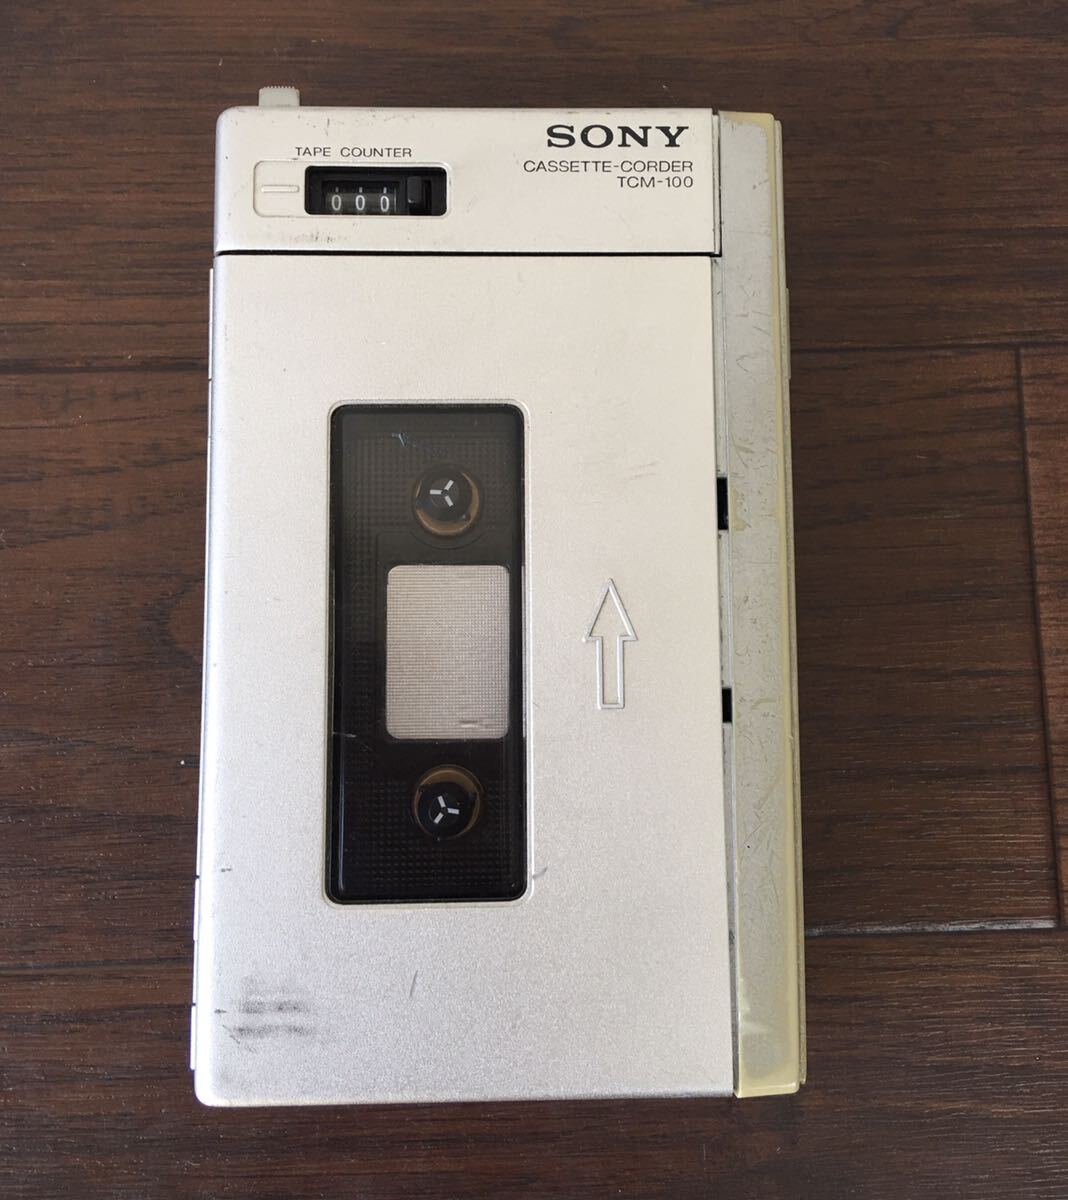 ソニー SONY カセットコーダー TCM-100 通電確認済み 現状渡しの画像1